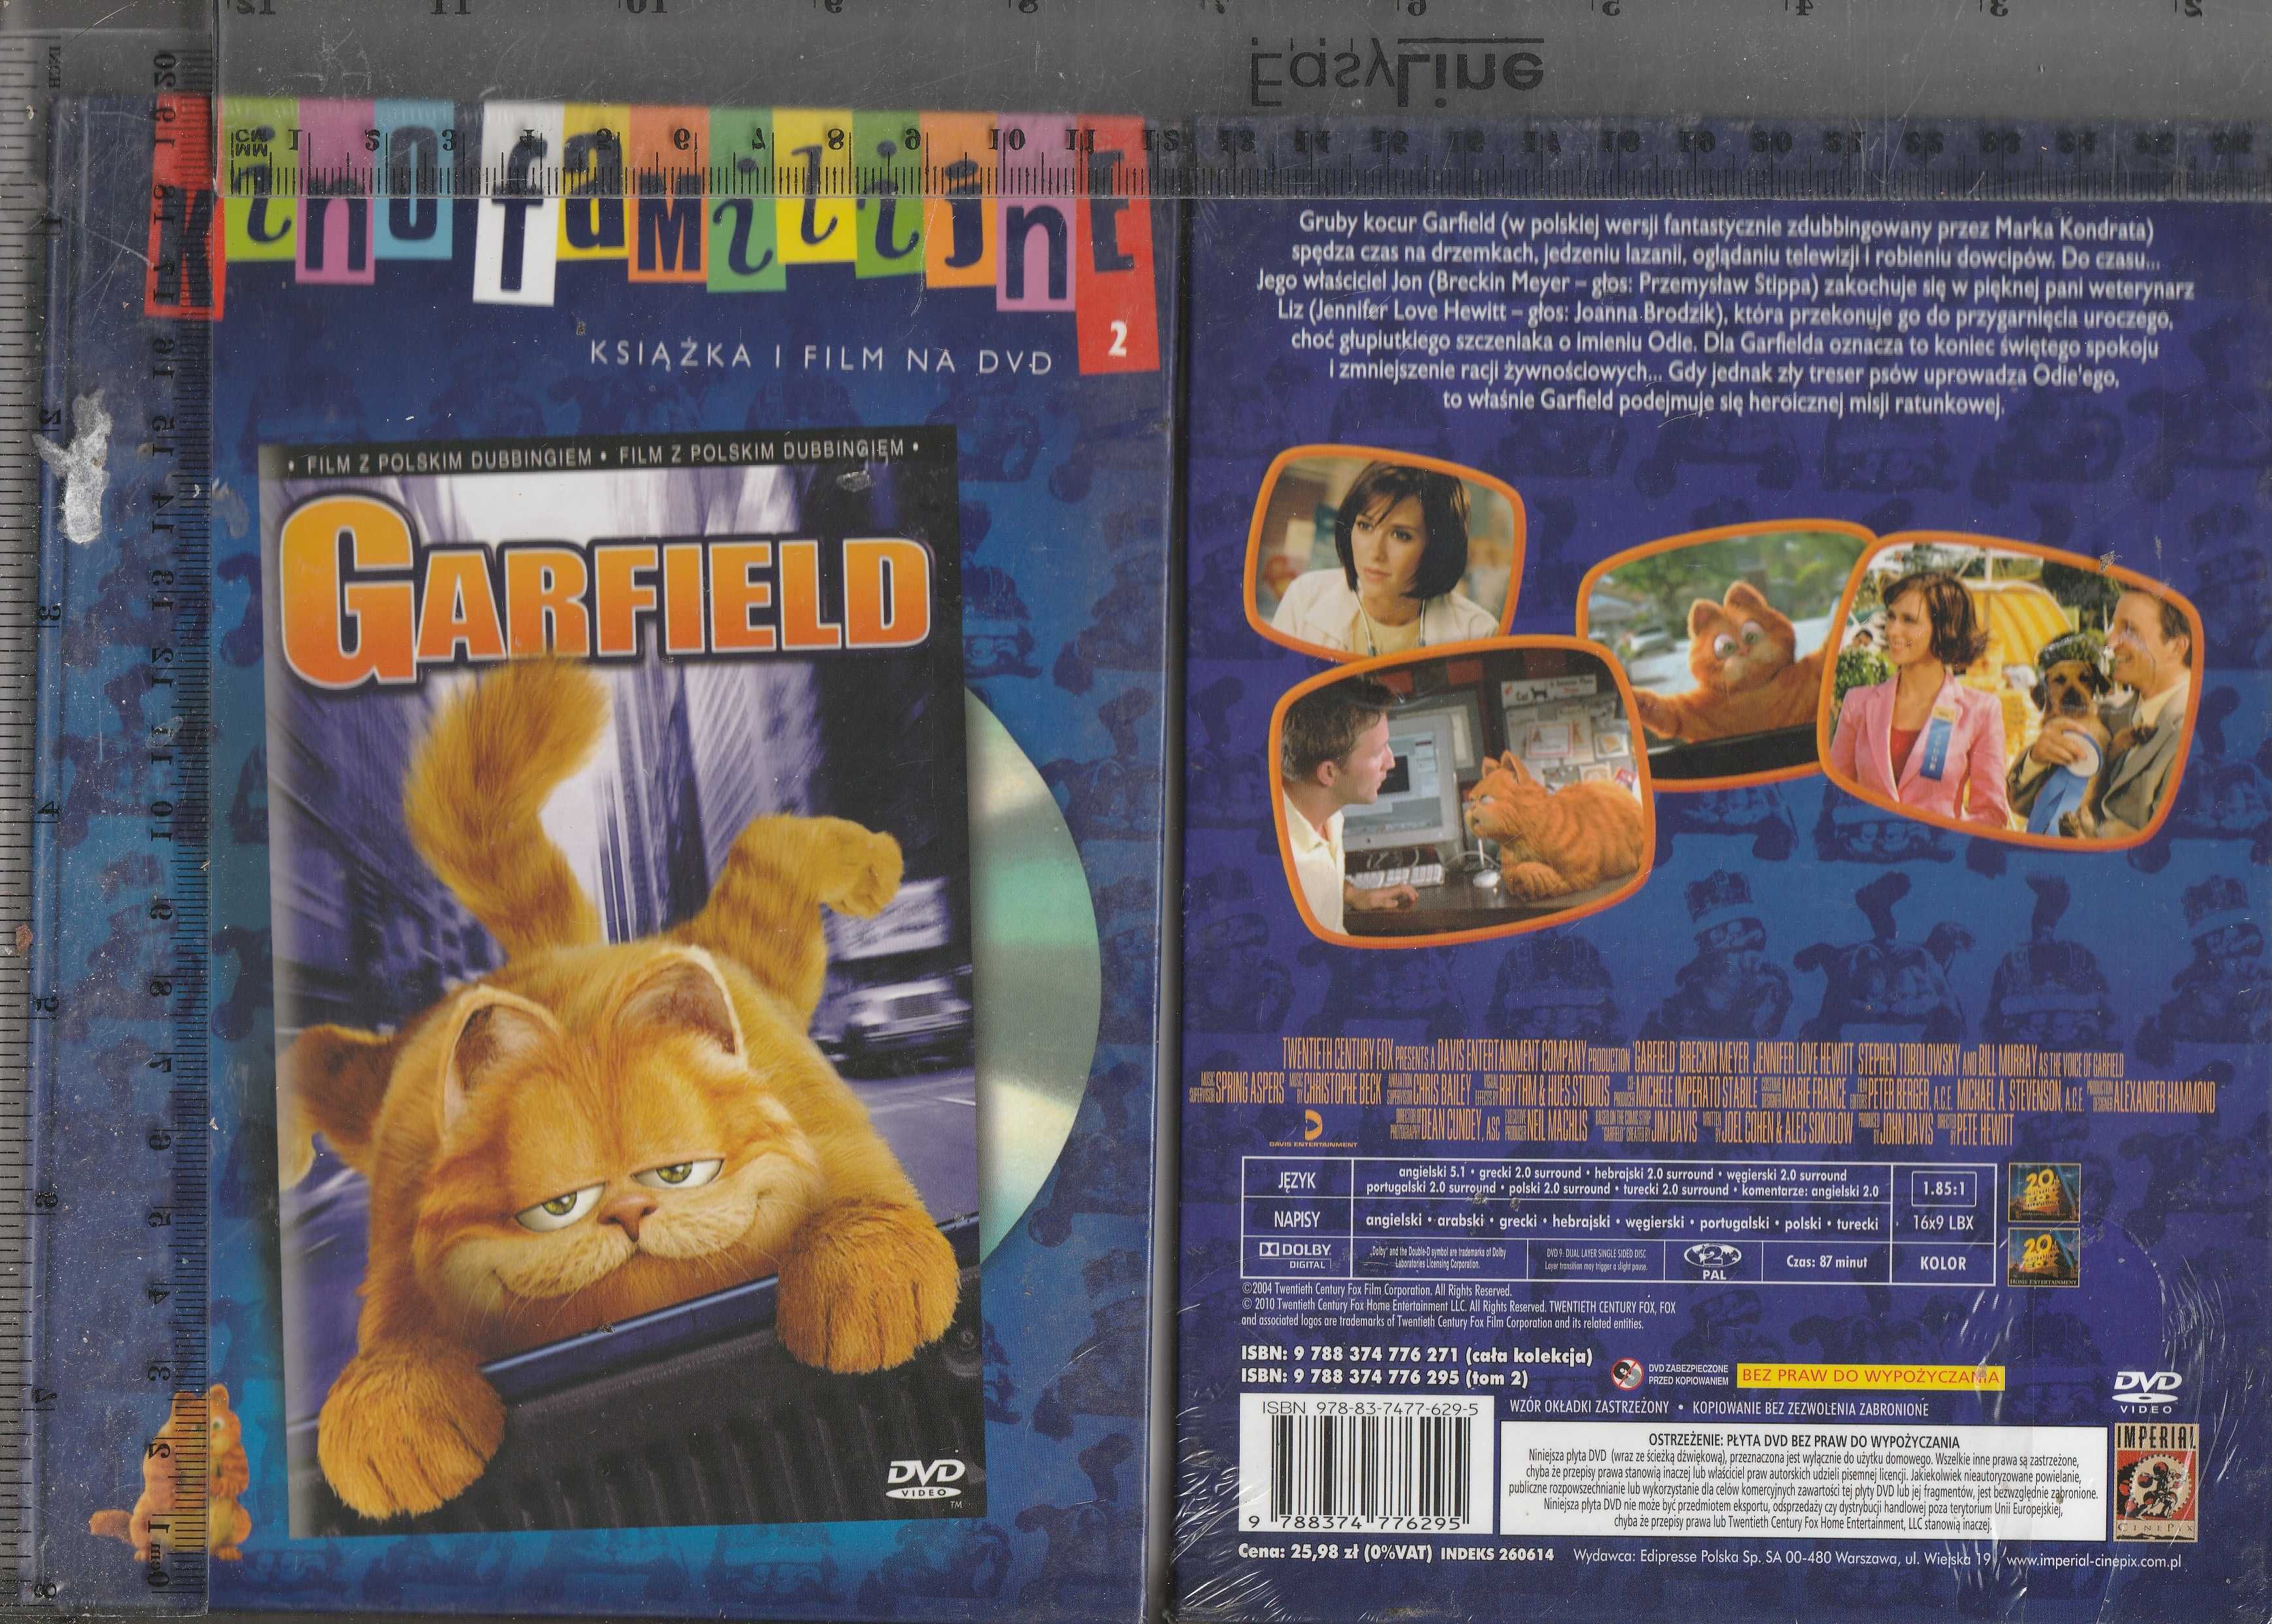 Garfield lektor pl DVDGarfield lektor pl DVD